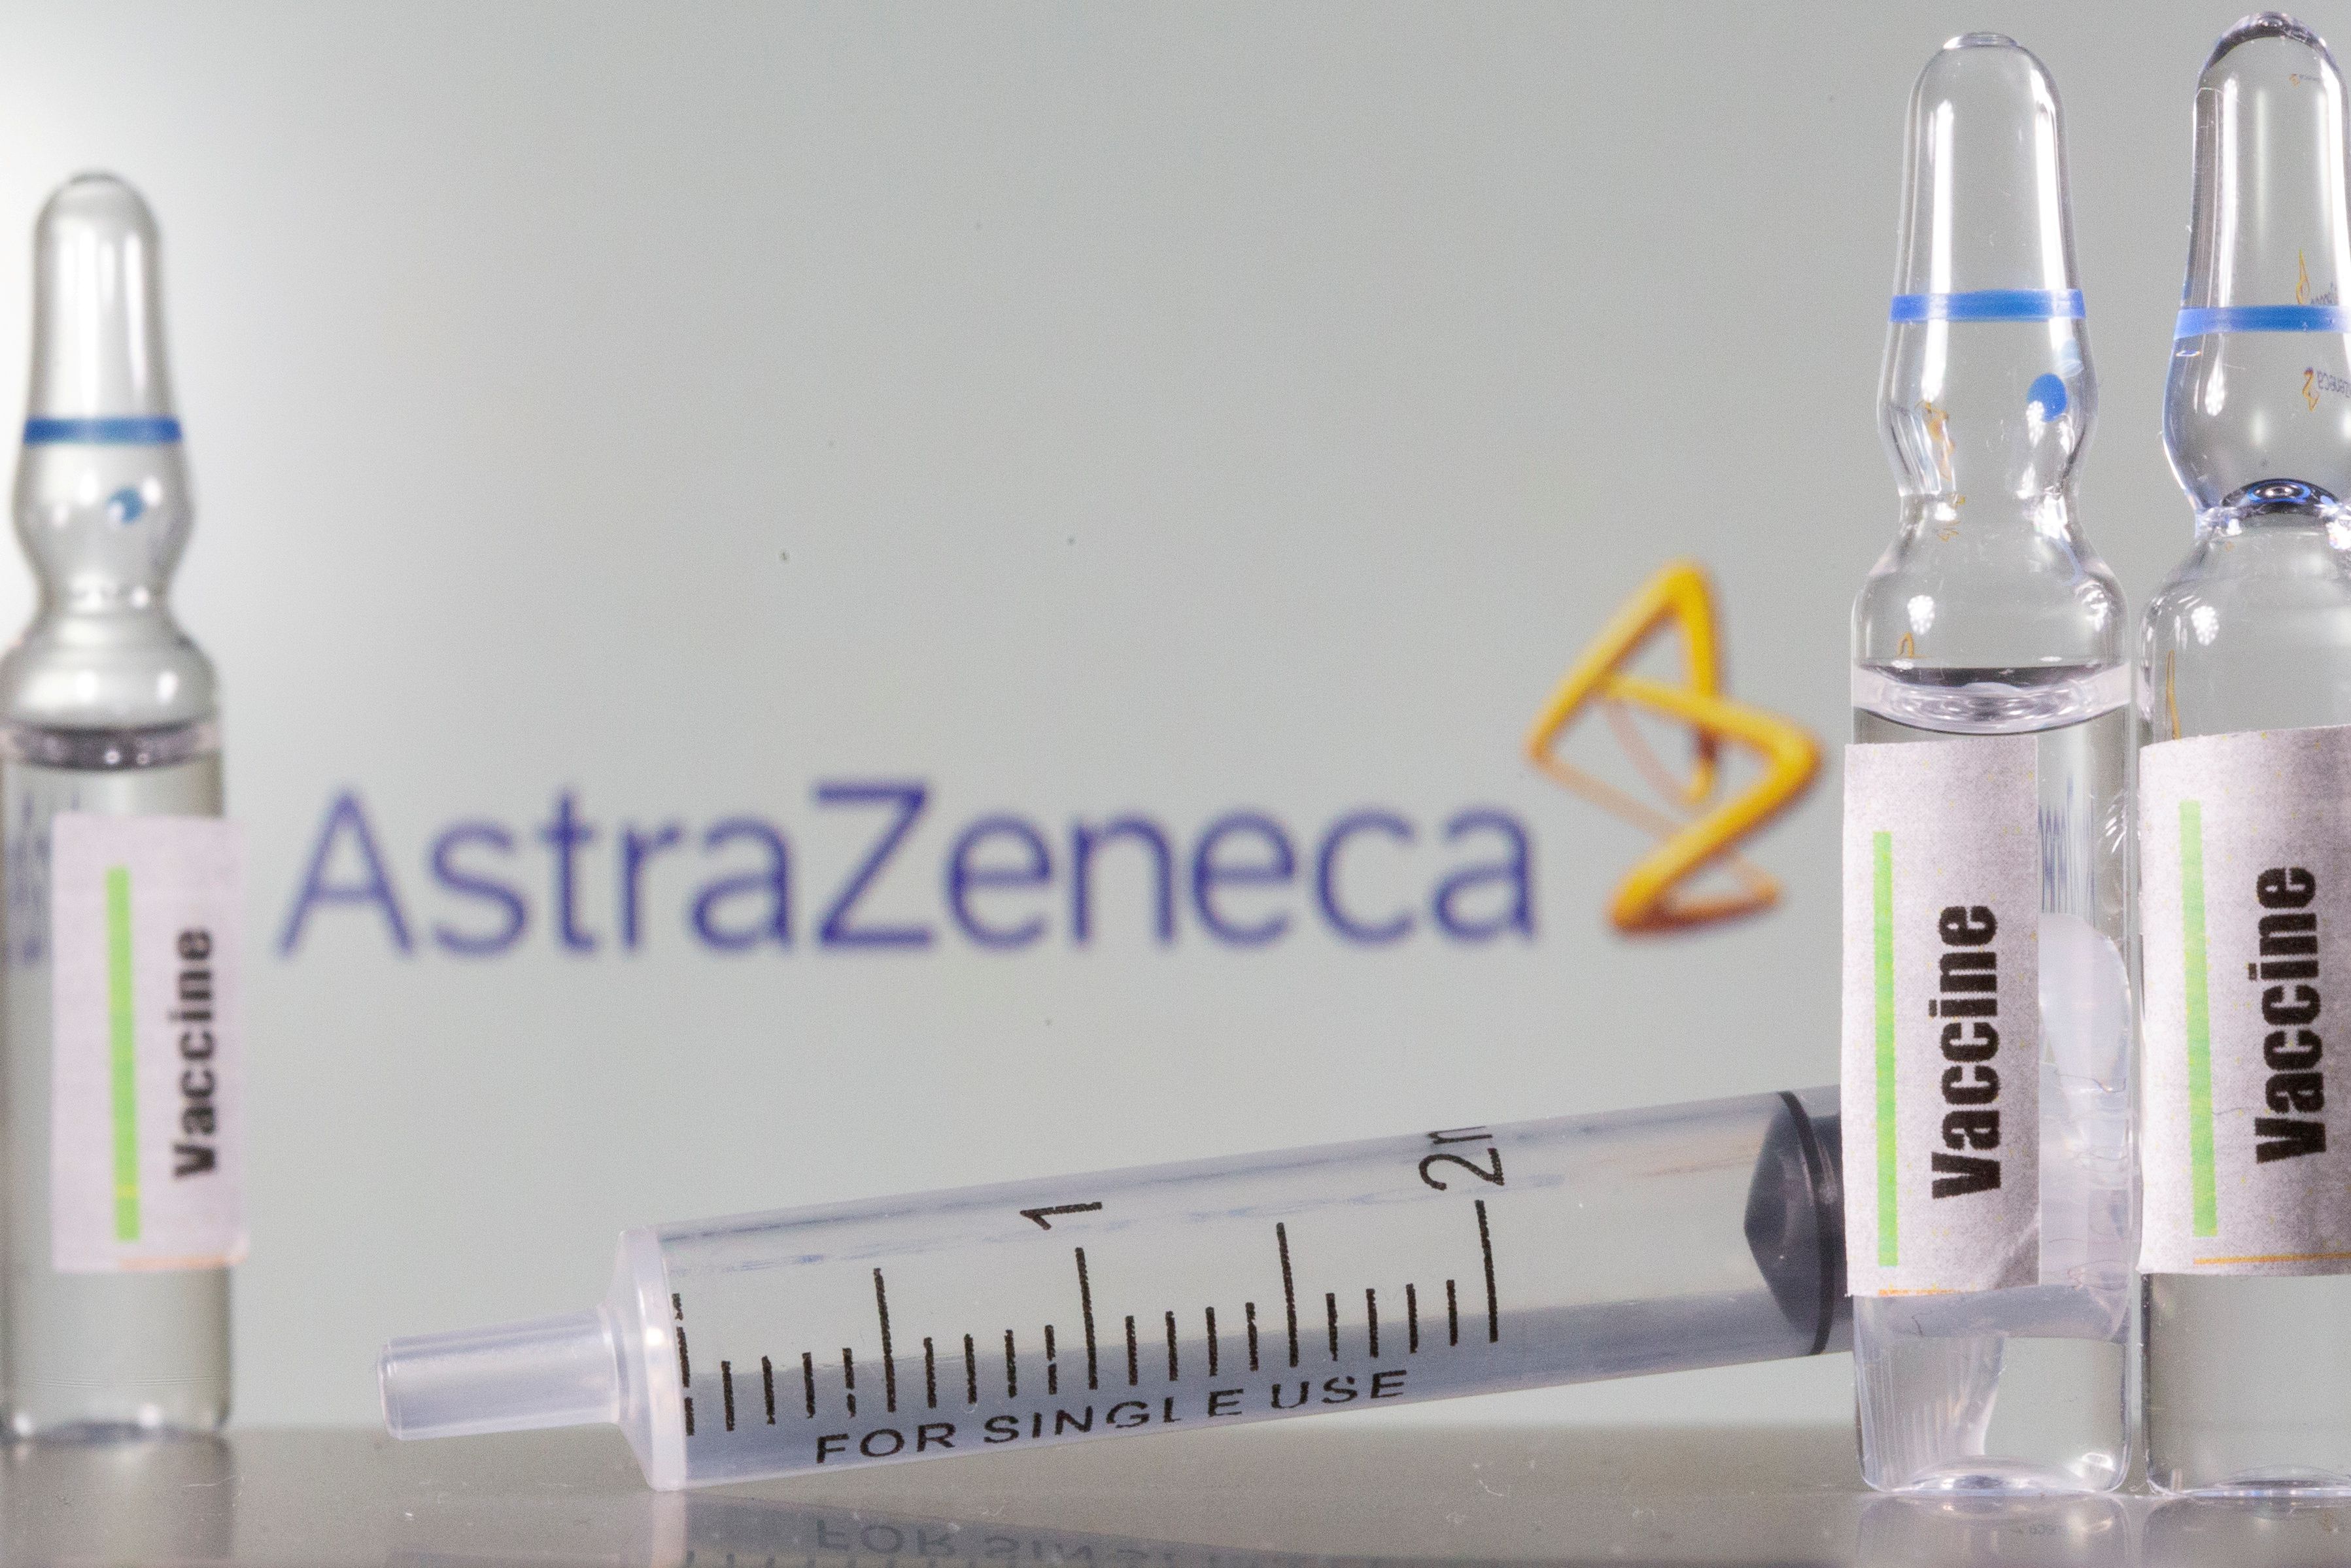 La vacuna está actualmente siendo evaluada en estudios clínicos de fase 3 en varios países del mundo - REUTERS/Dado Ruvic/Illustration/File Photo